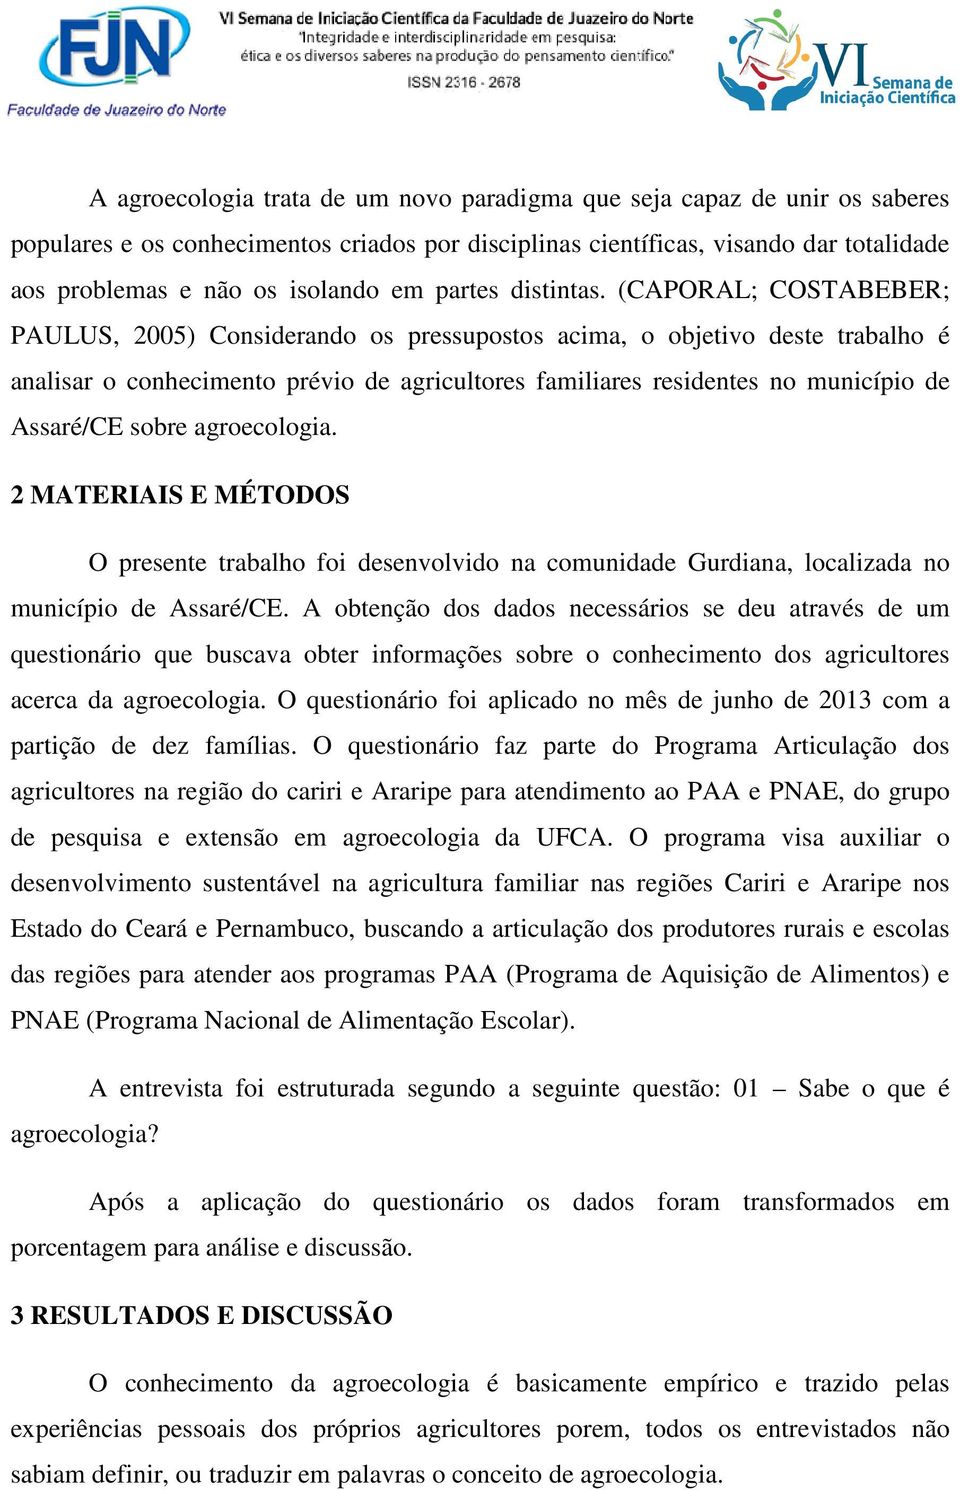 (CAPORAL; COSTABEBER; PAULUS, 2005) Considerando os pressupostos acima, o objetivo deste trabalho é analisar o conhecimento prévio de agricultores familiares residentes no município de Assaré/CE